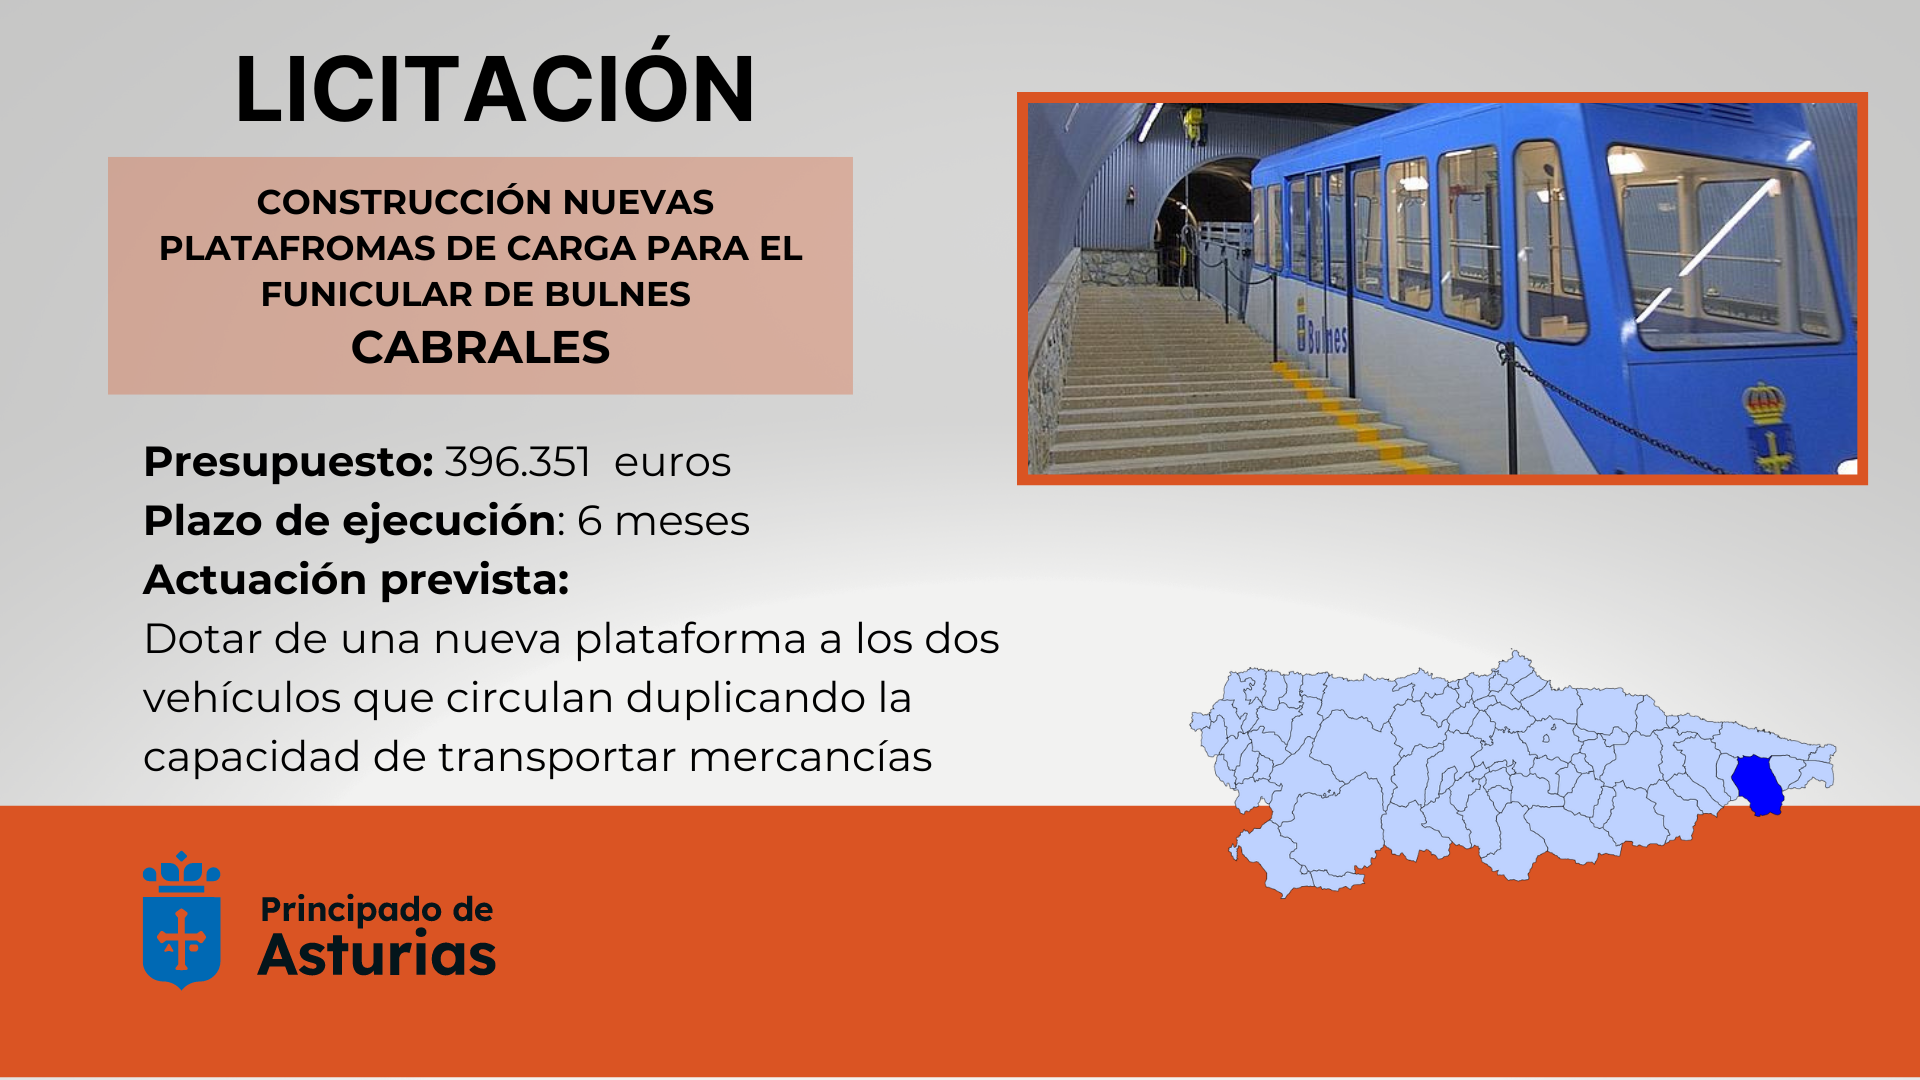 Imagen - El Gobierno de Asturias licita la construcción de dos nuevas plataformas de carga para el funicular de Bulnes por 396.000 euros